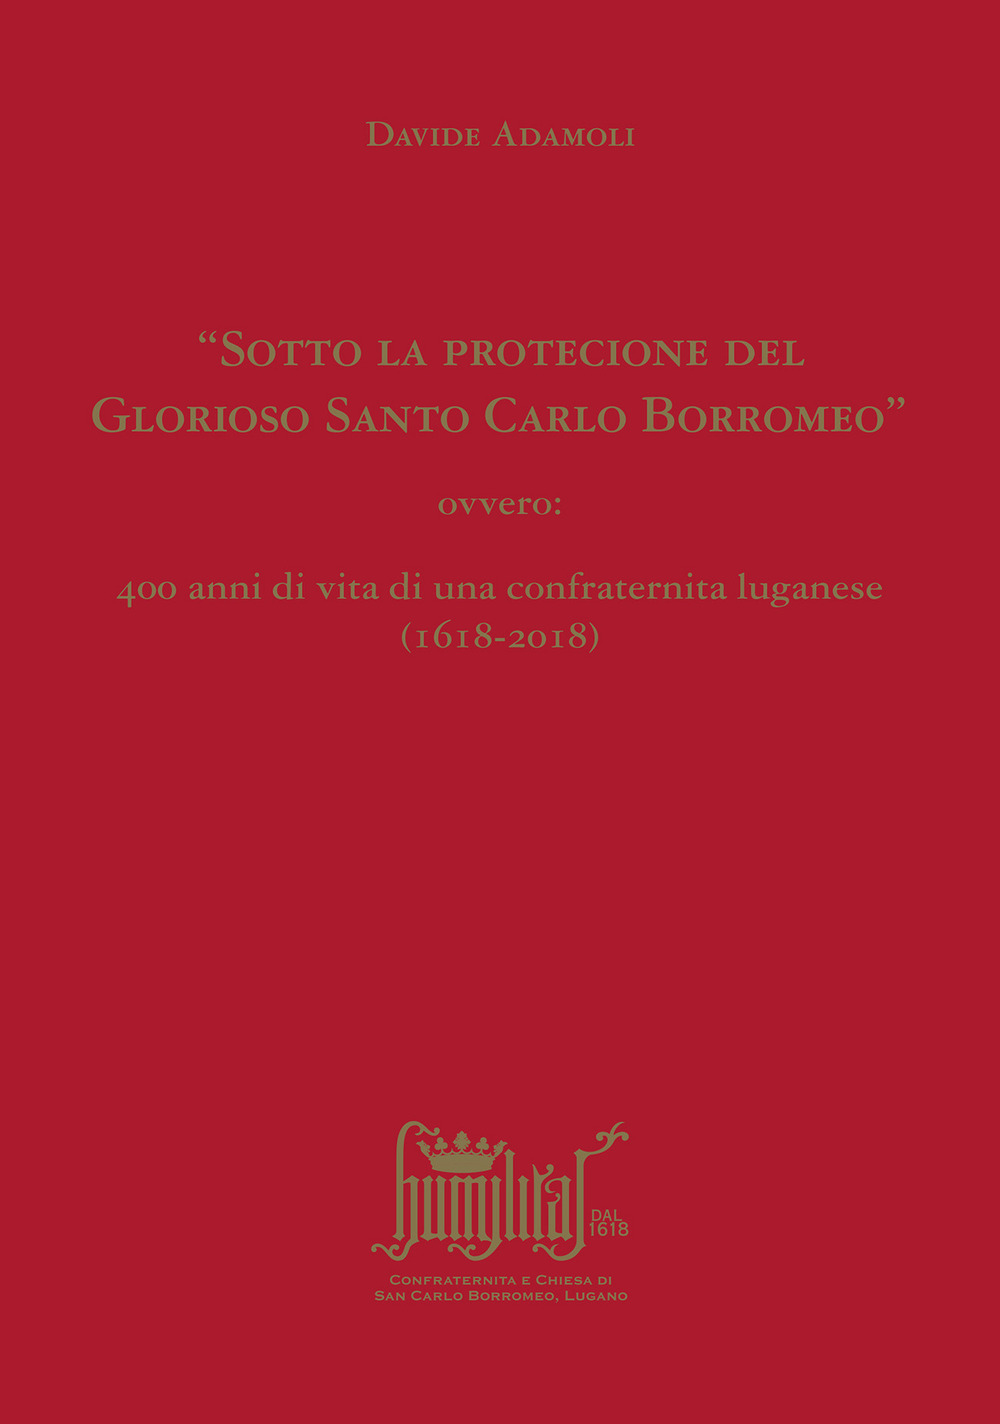 «Sotto la protecione del Glorioso Santo Carlo Borromeo» ovvero: 400 anni di vita di una confraternita luganese (1618-2018)